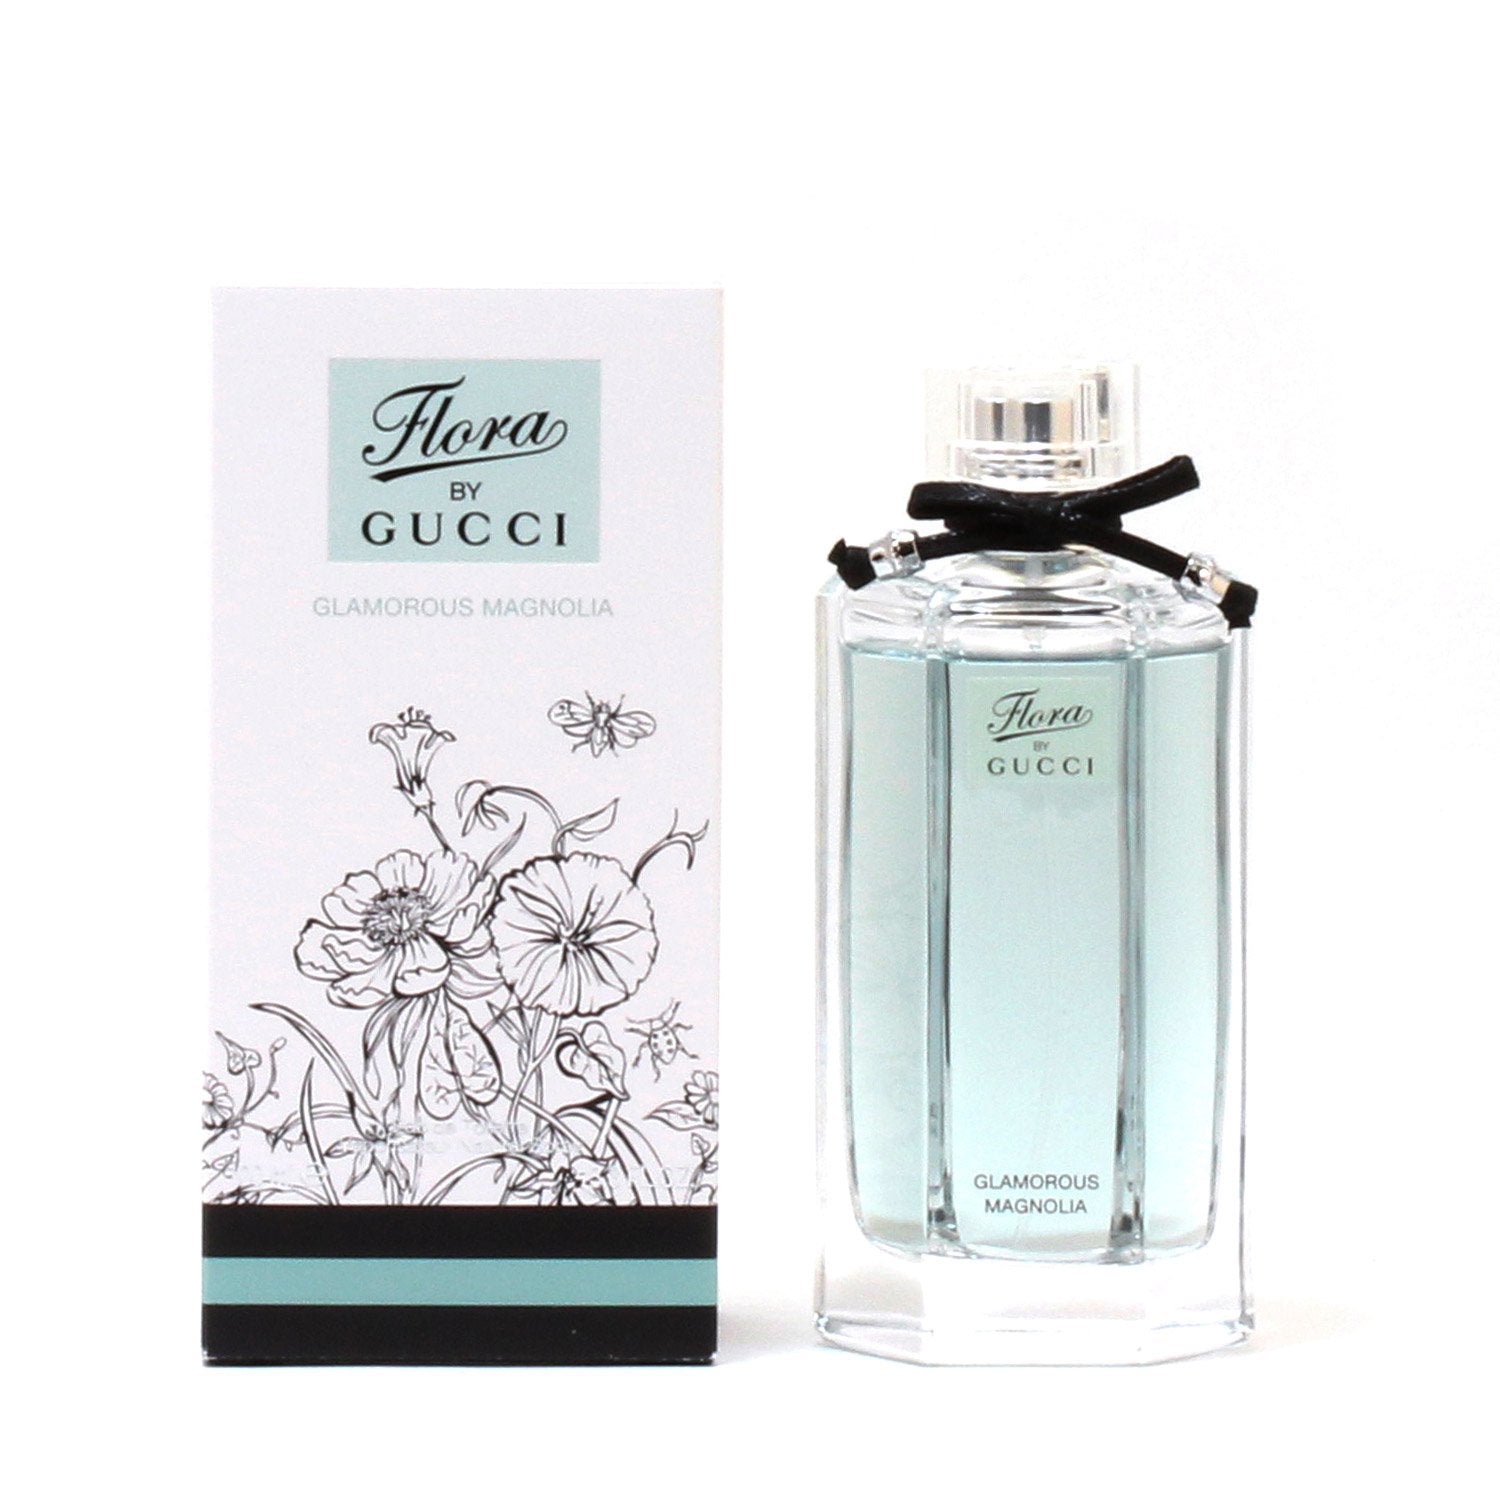 Perfume - GUCCI FLORA GLAMOROUS MAGNOLIA FOR WOMEN - EAU DE TOILETTE SPRAY, 3.4 OZ